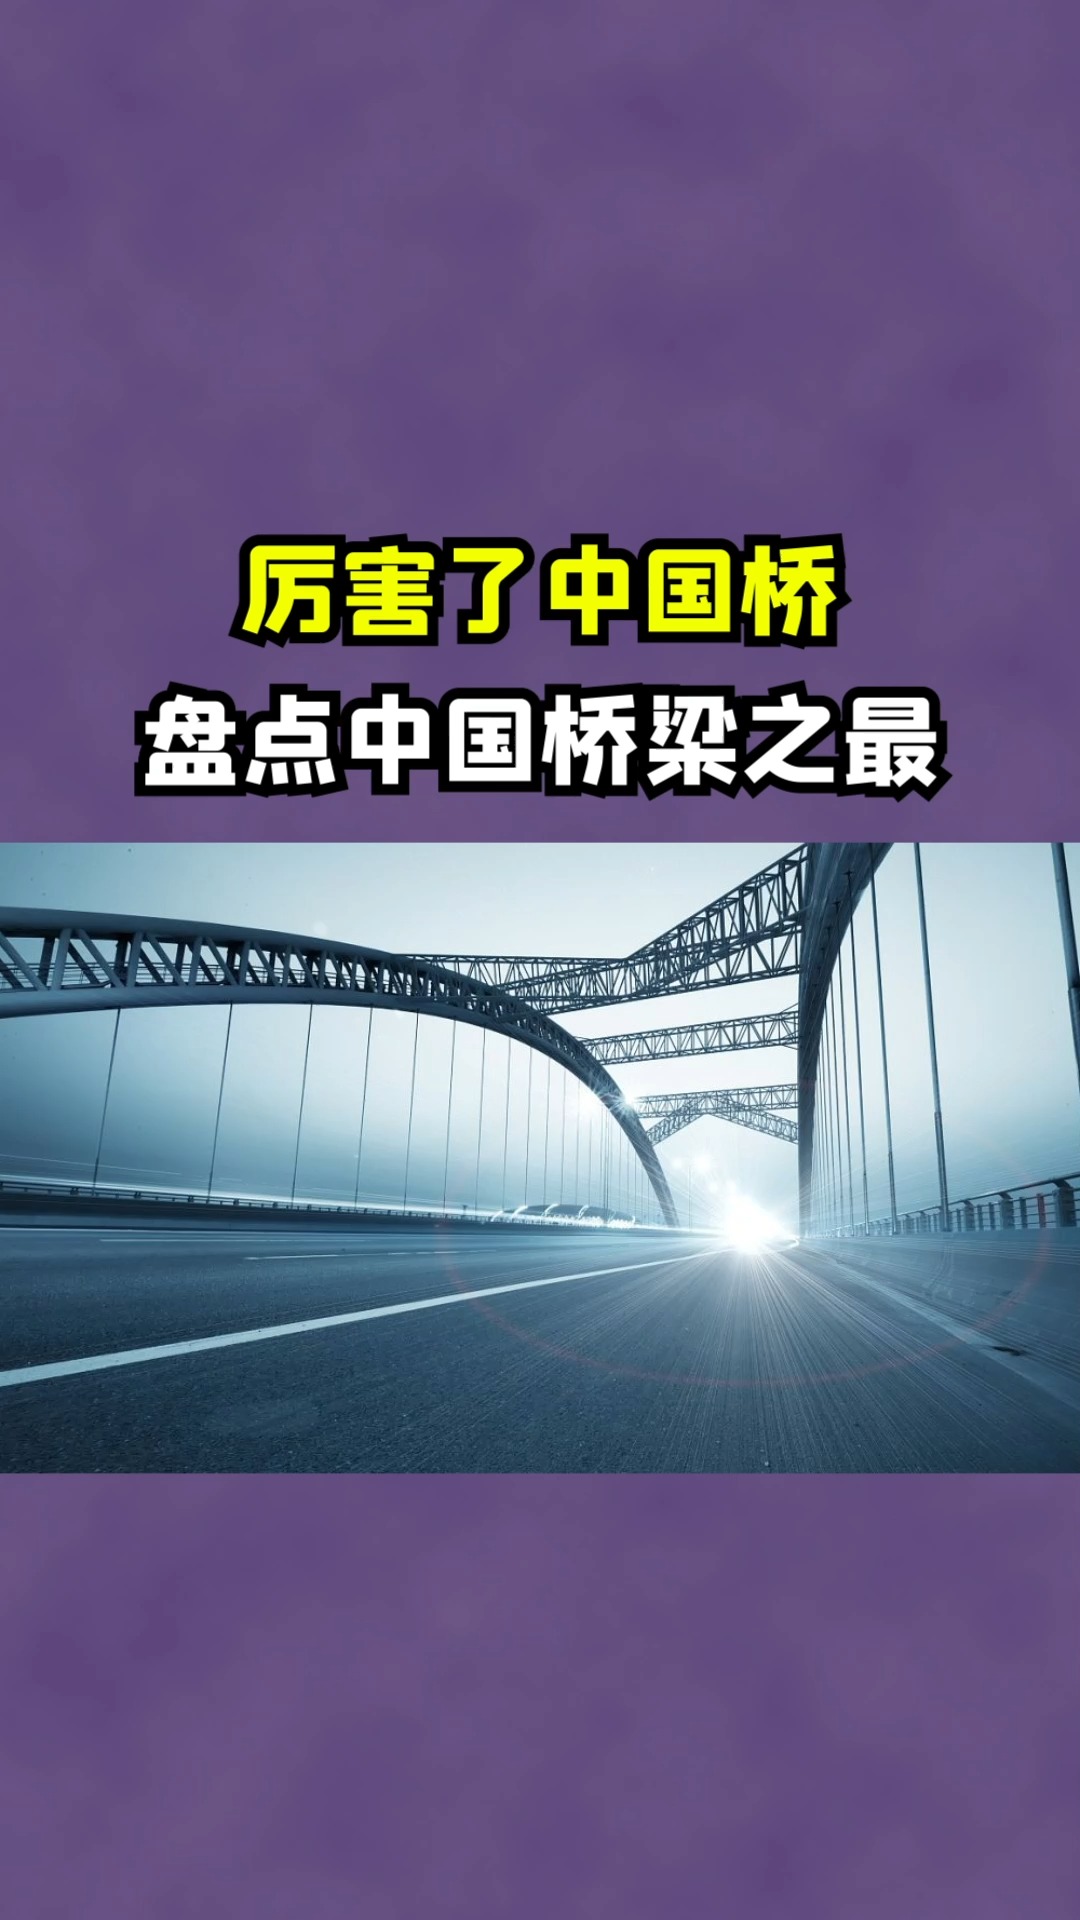 世界桥梁看中国!盘点中国桥梁之最